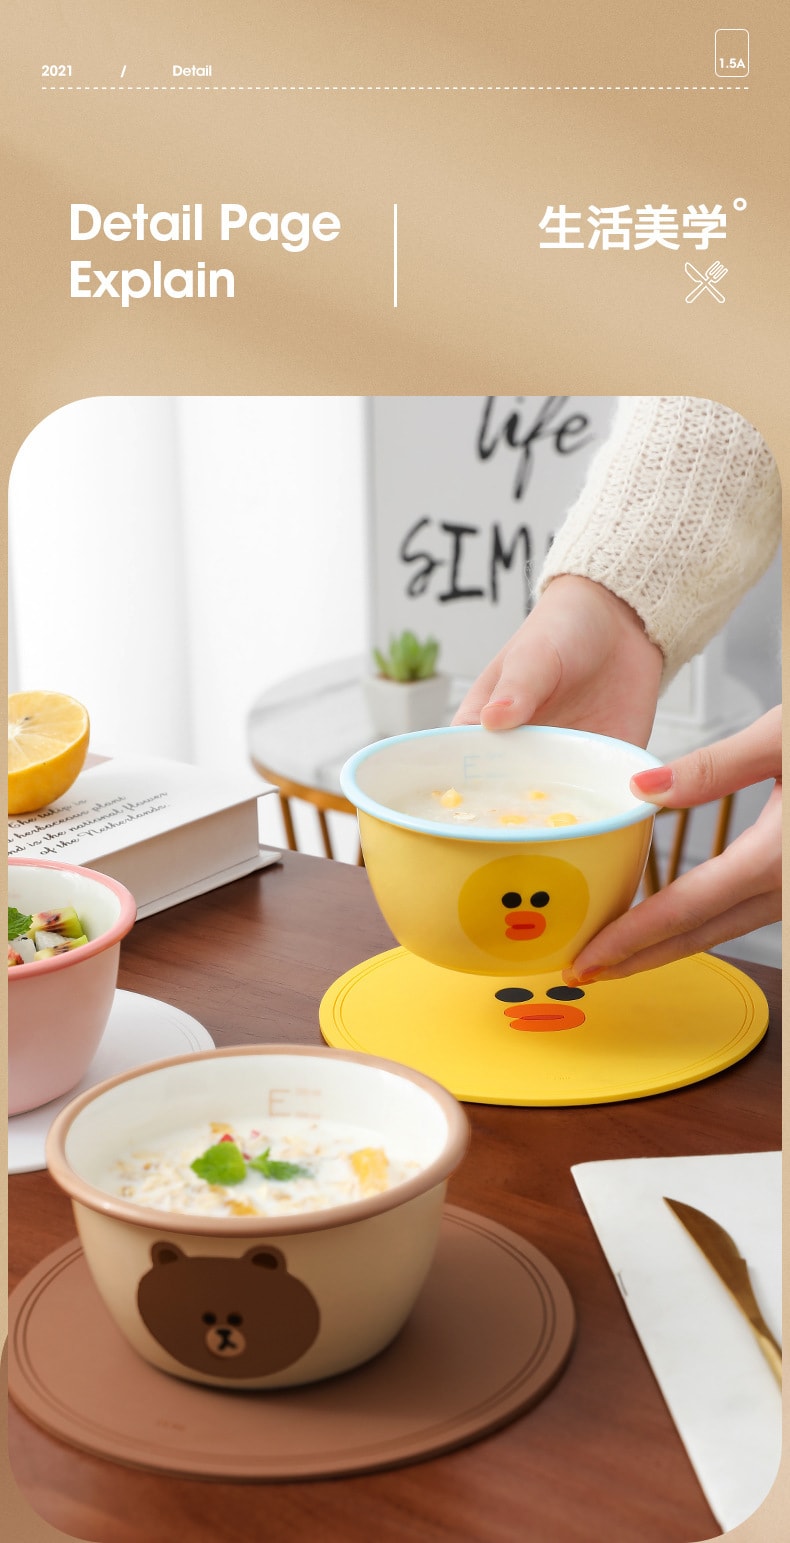 【中国直邮】LINE FRIENDS  创意陶瓷餐具带刻度杯儿童食品级减脂早餐可爱甜品碗  SALLY款